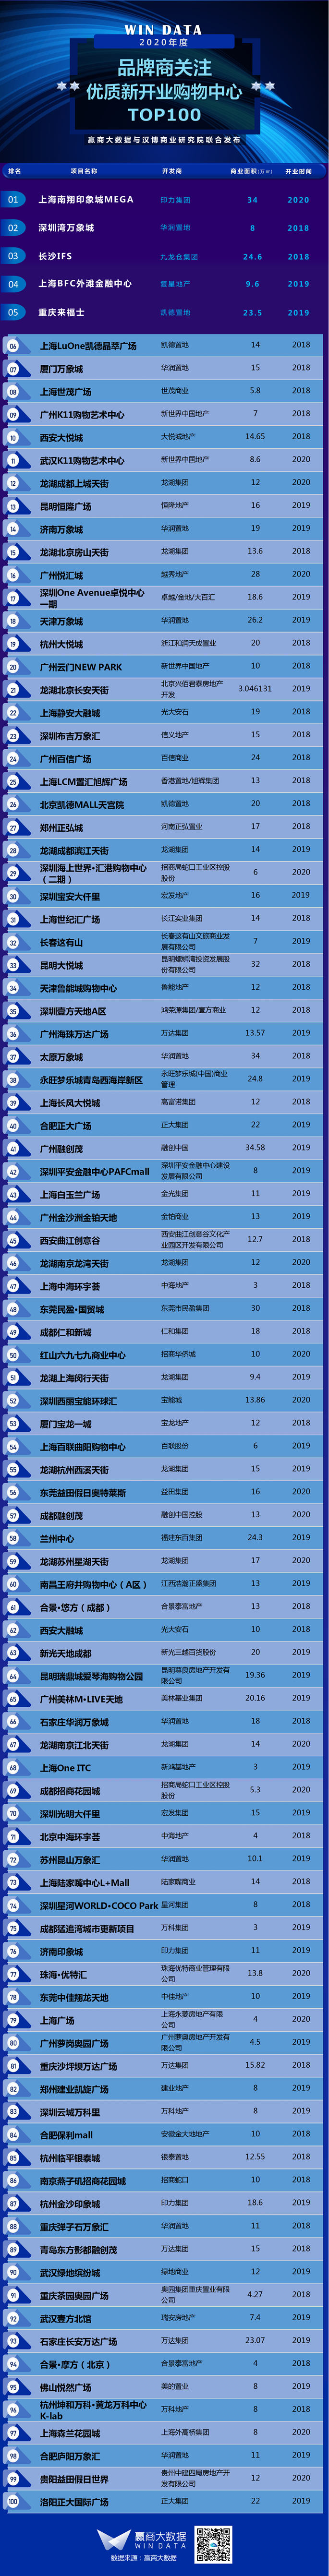 2020购物中心百强榜来了杭州哪几家最受品商关注